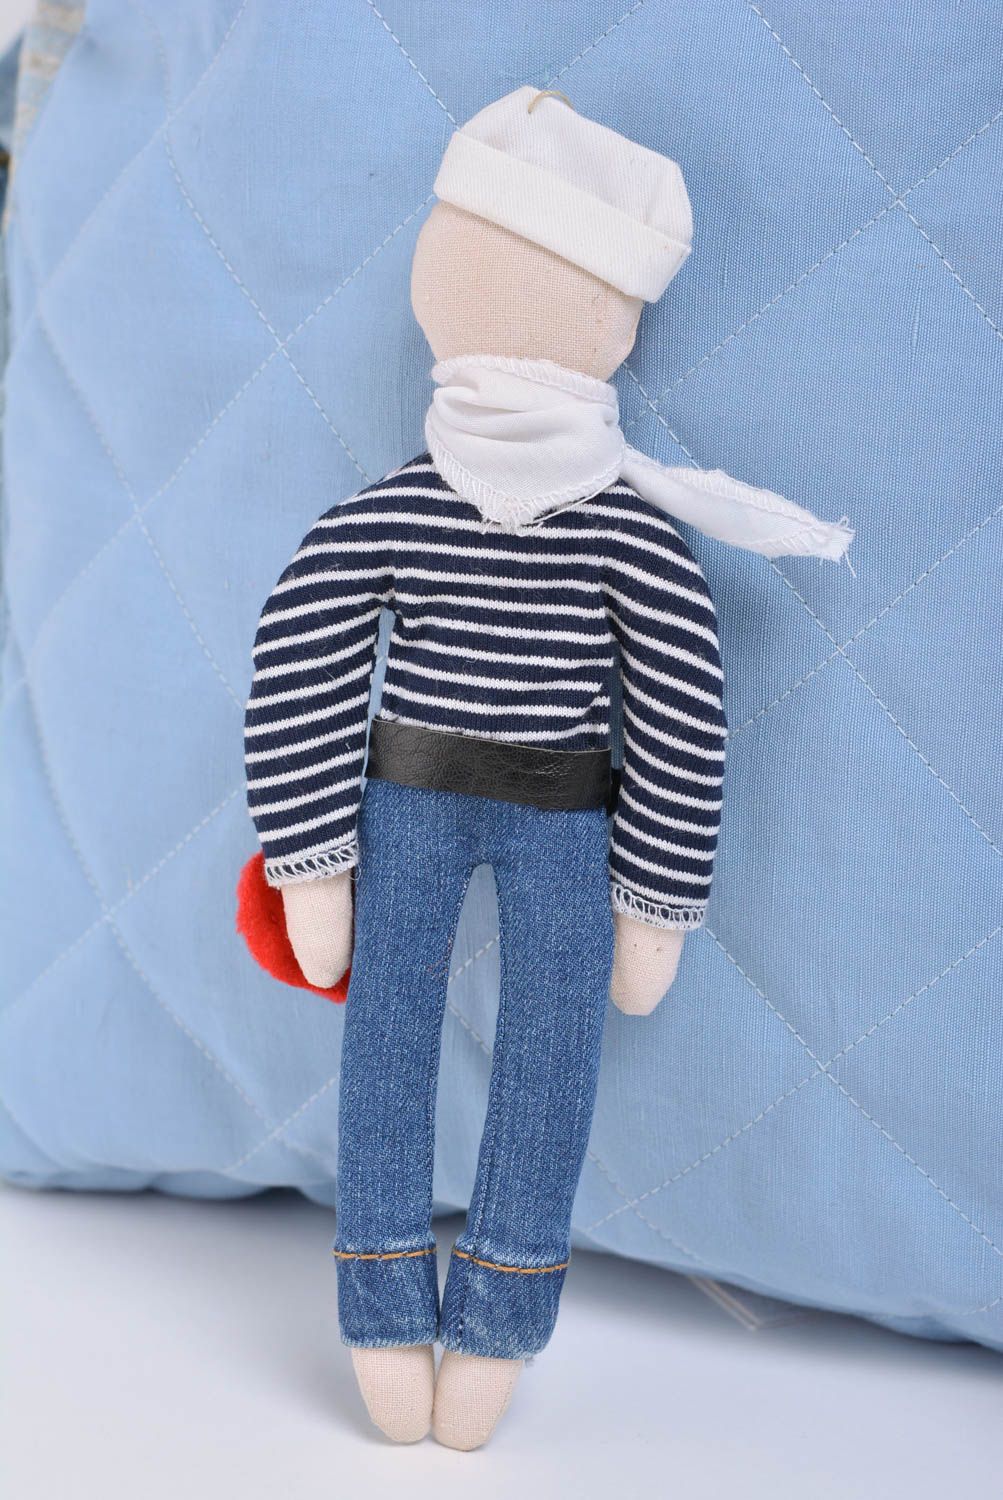 Schöne Spielzeug Puppe aus Stoff für Interieur Seemann handmade Künstlerarbeit foto 3